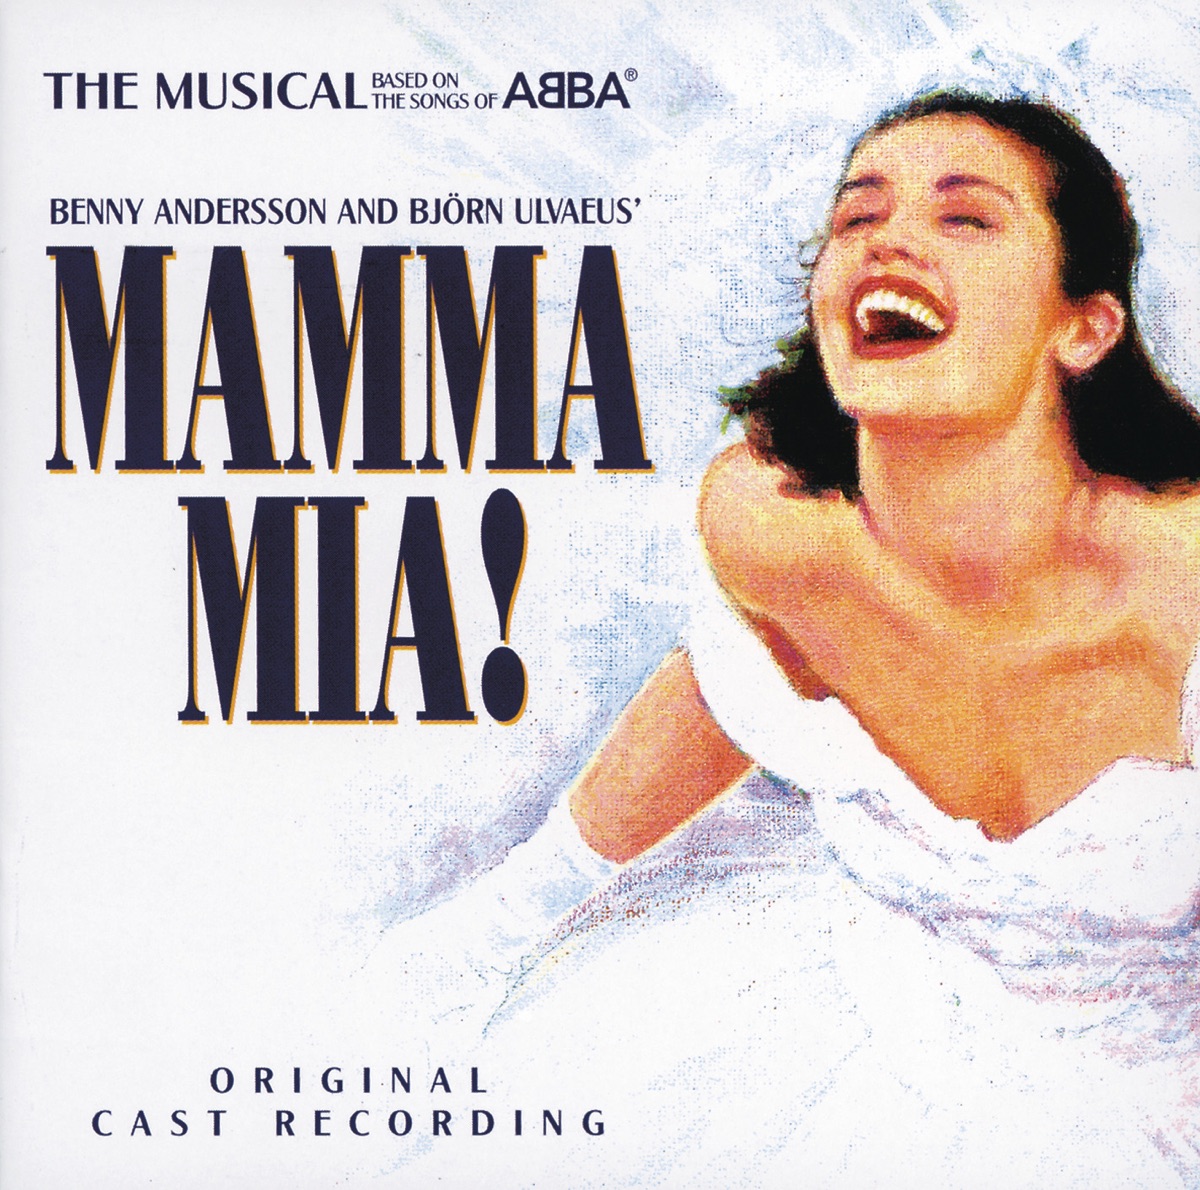 Mamma Mia! (Original Cast Recording) by Mamma Mia! on Apple Music